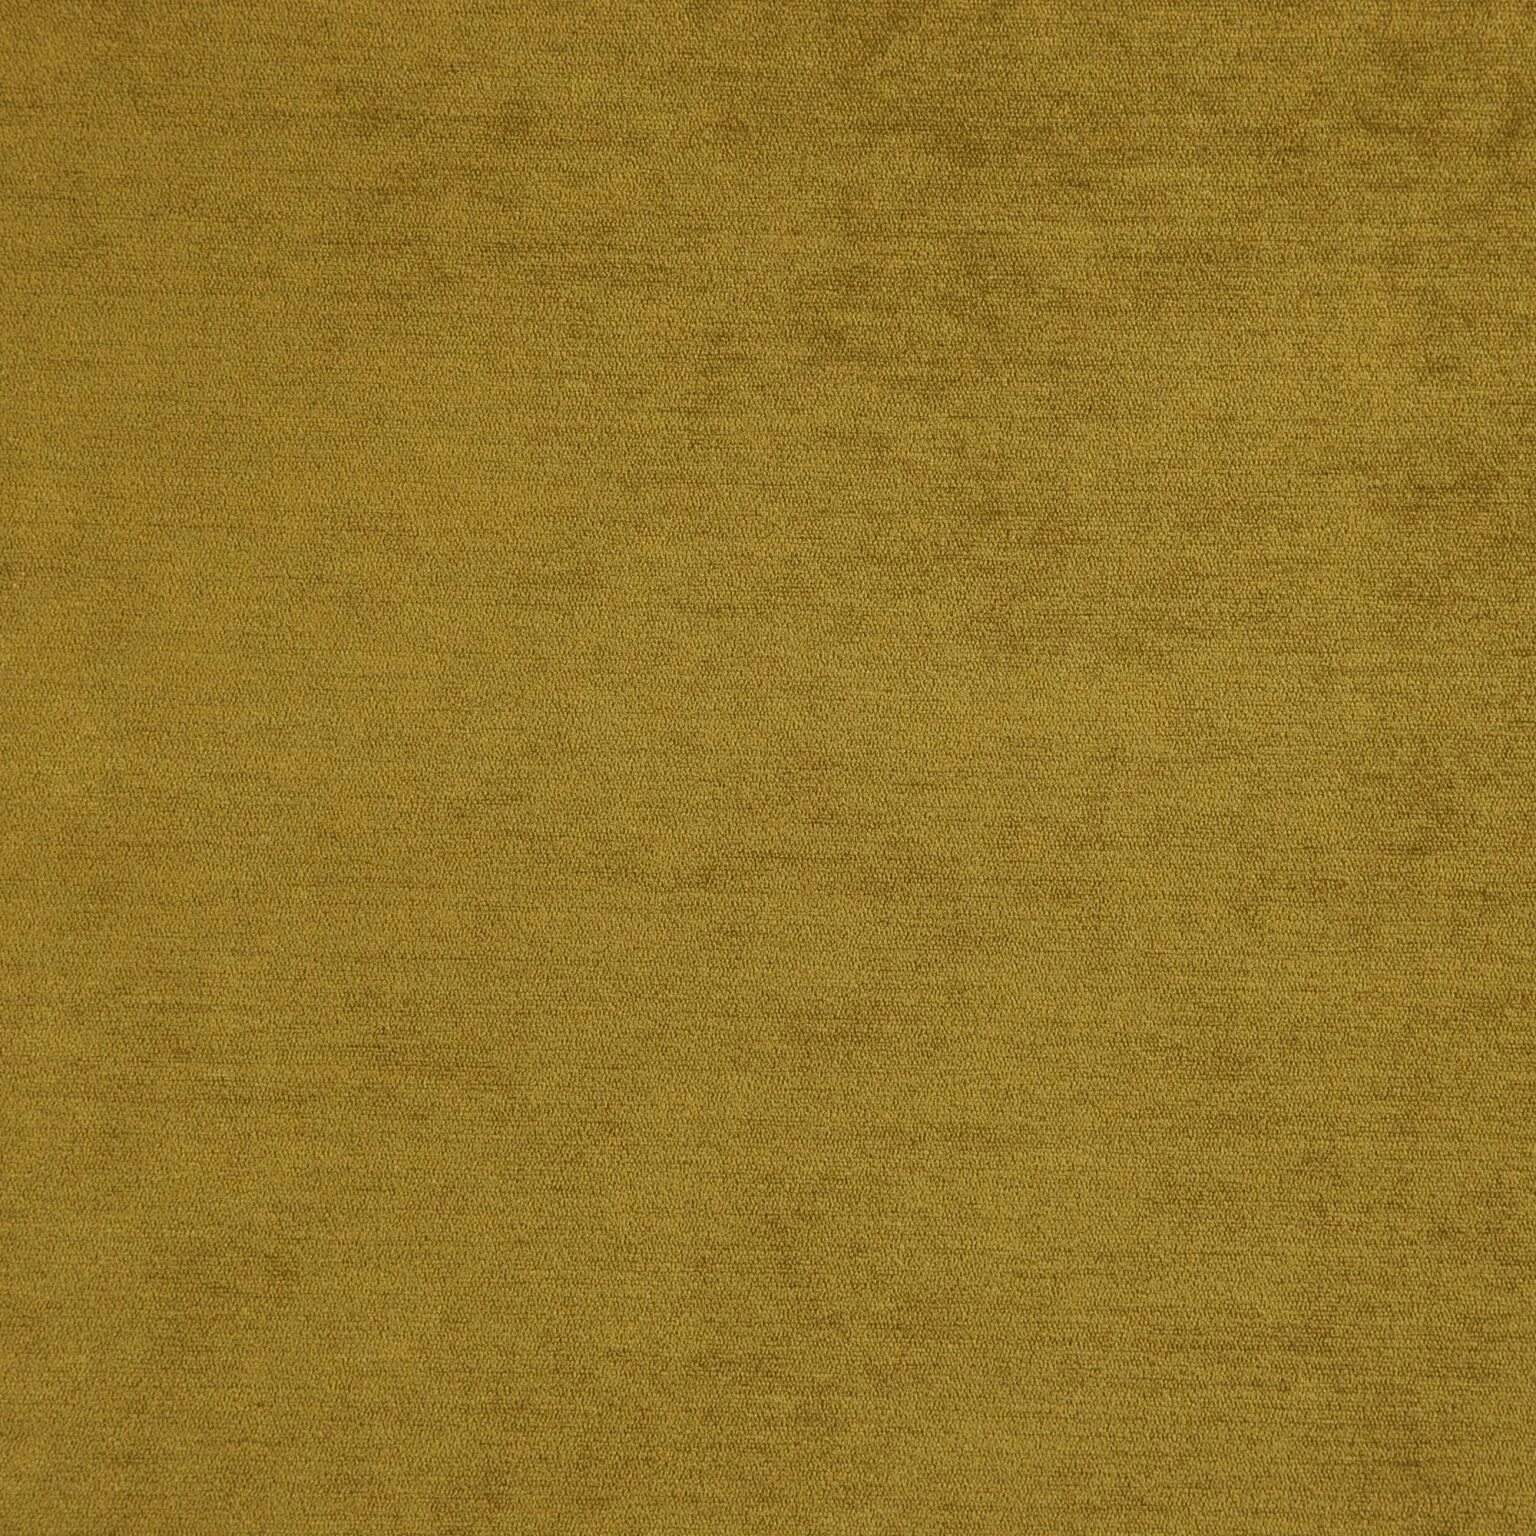 Ткань Baron 19 Gold. Натуральные обои Cosca Калипсо. Палаточное полотно. Ткани Кавалли.